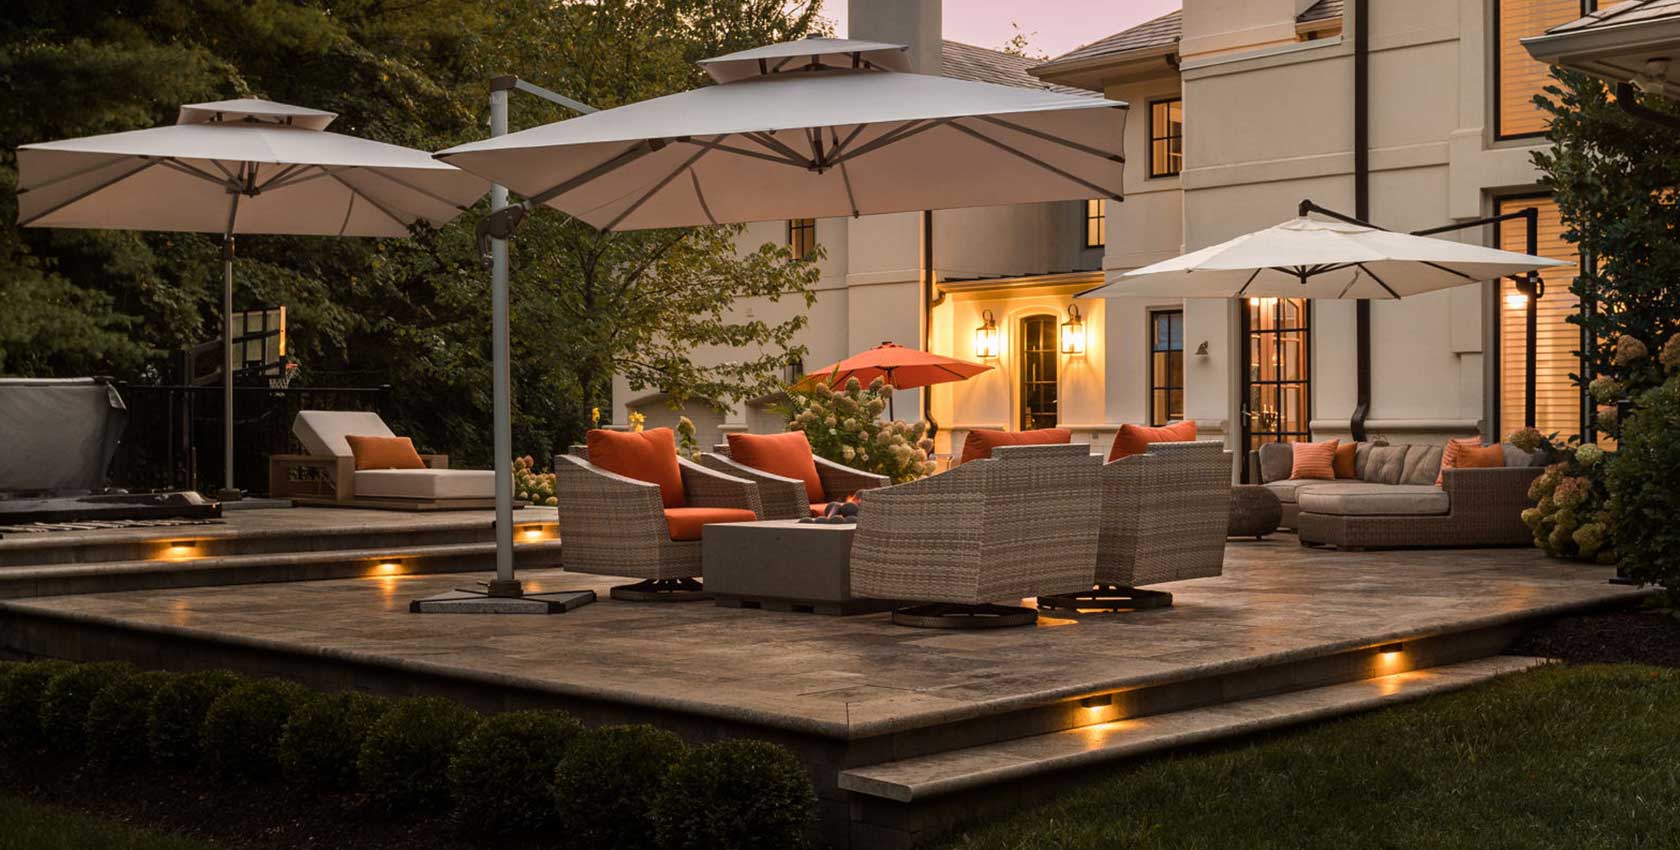 Outdoor lighting tips for luxury outdoor spaces.